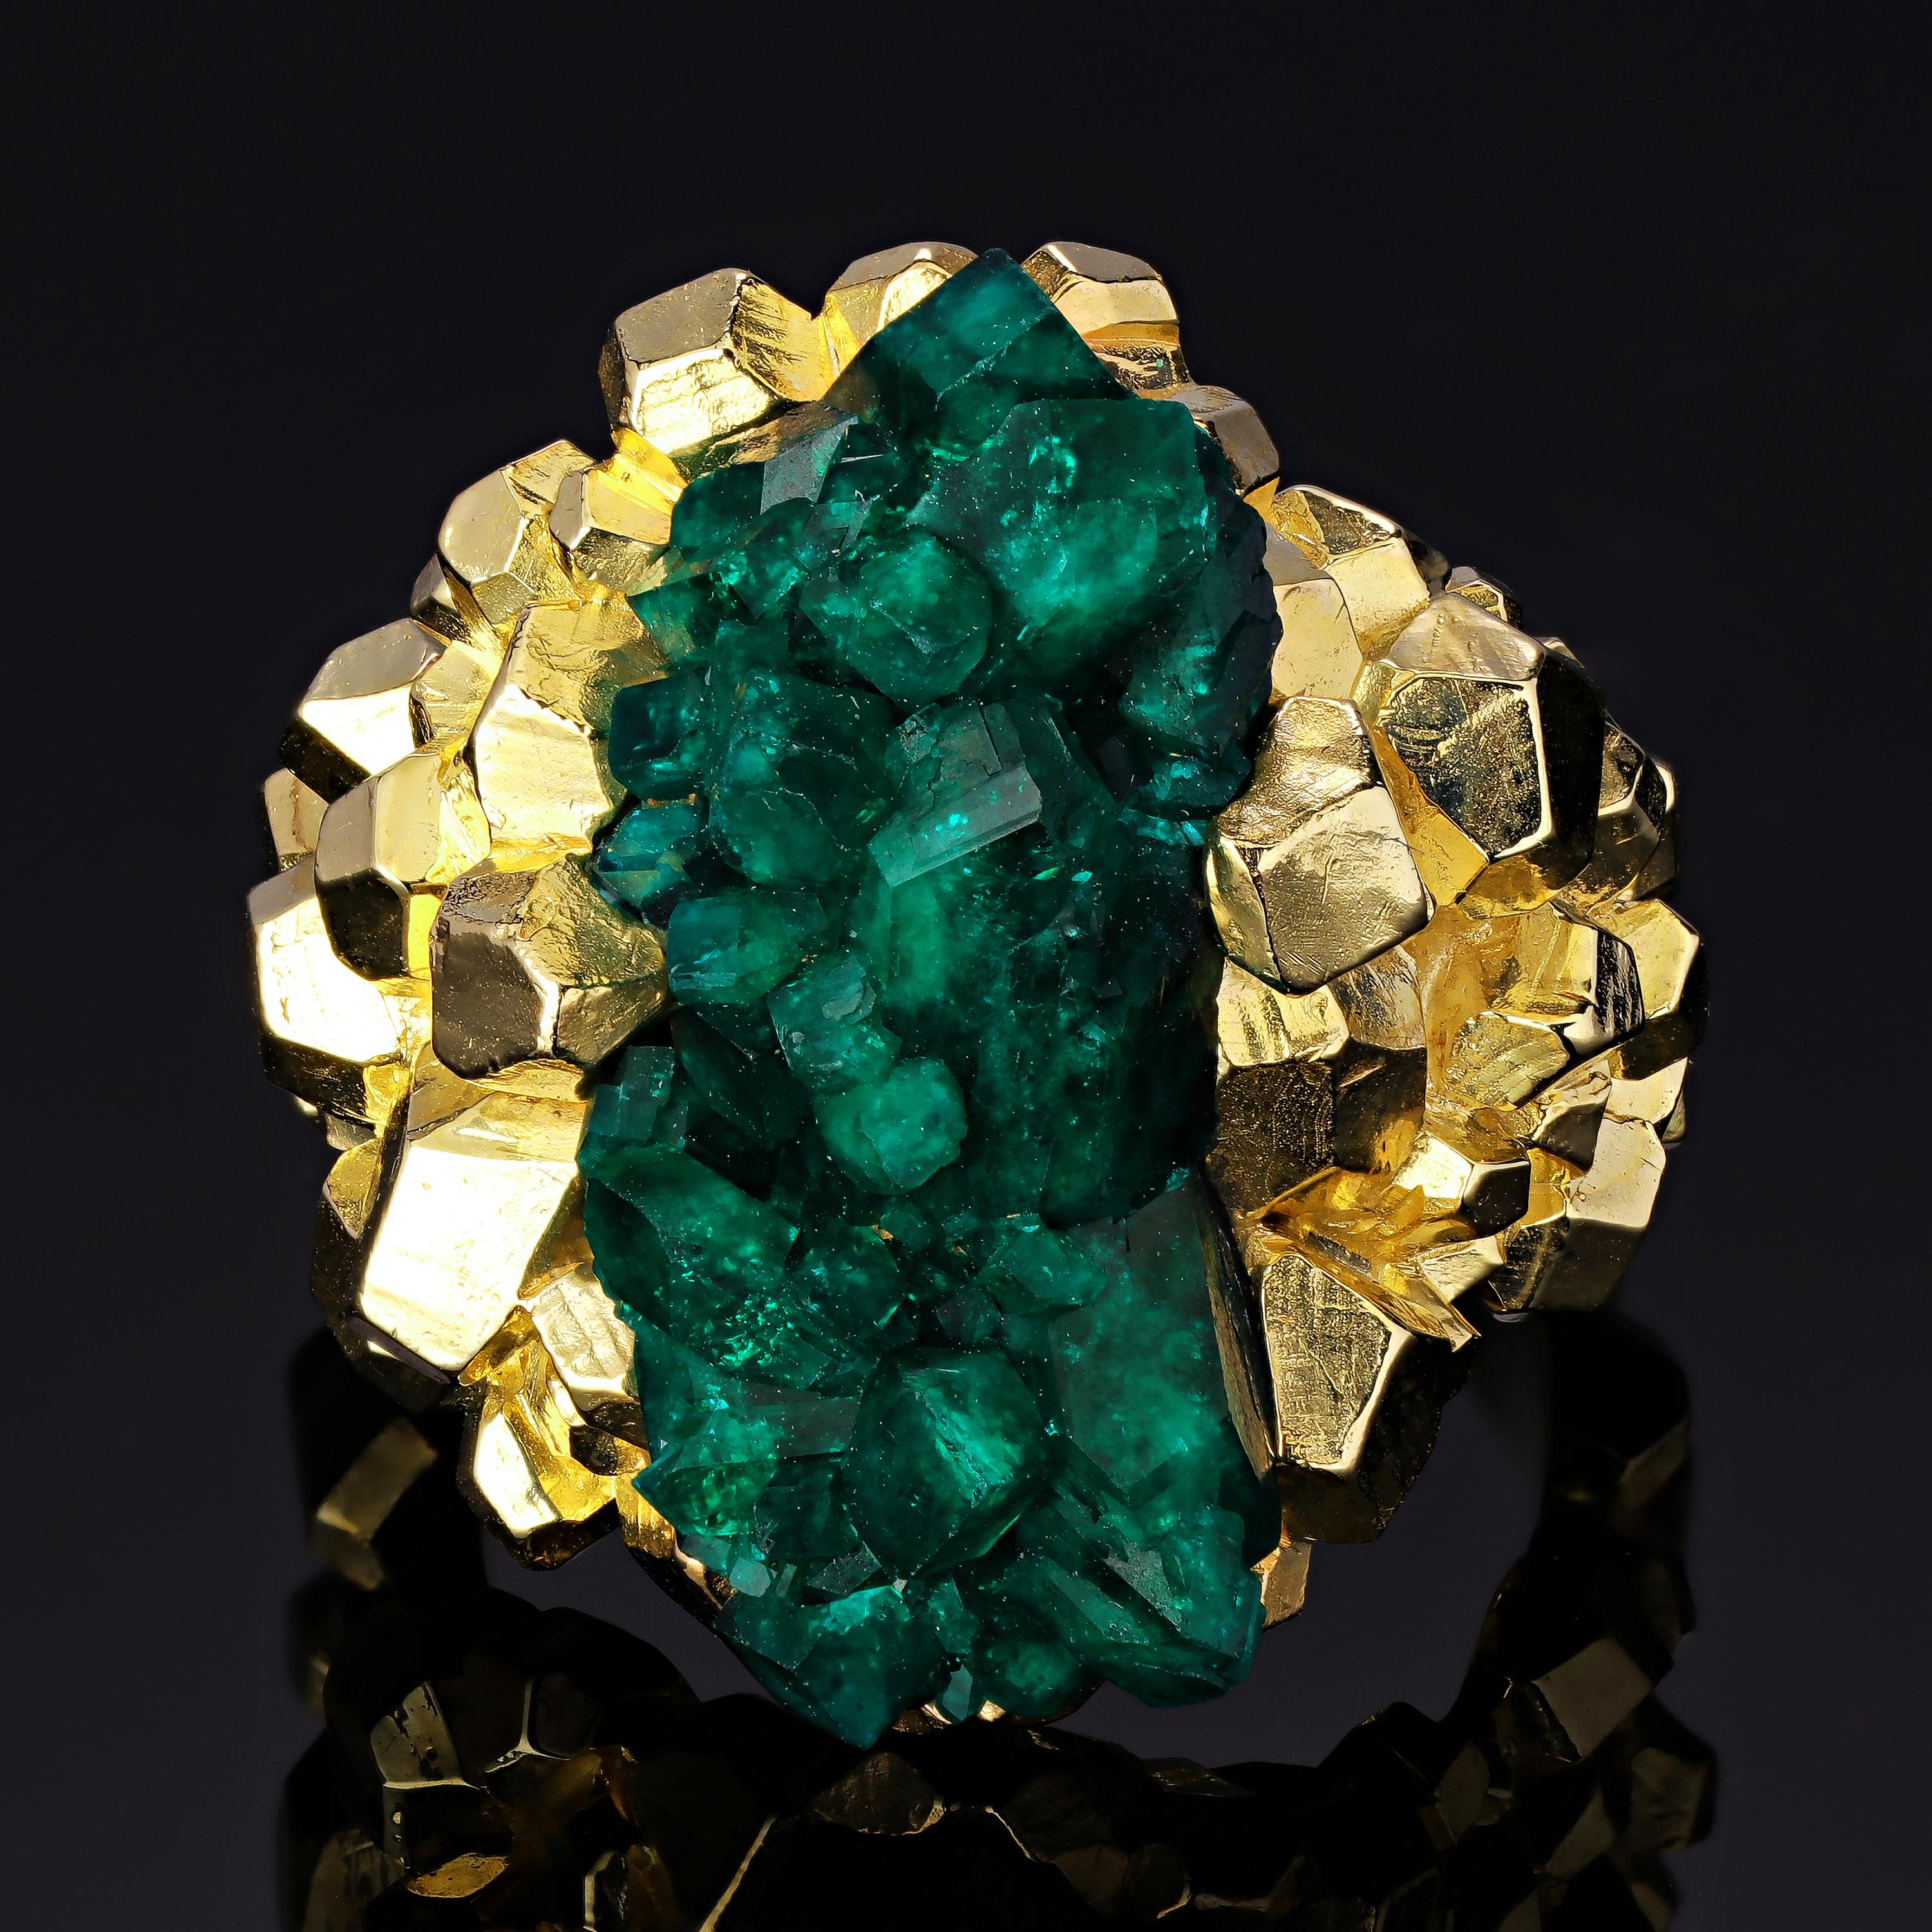 Dieser unglaubliche, einzigartige Ring stellt die natürliche Schönheit des Dioptas-Kristalls zur Schau und präsentiert ihn in der Mitte wie eine Schatztruhe, die vor intensiven Farben strotzt. Dieser hochwertige Dioptas, der in Kasachstan abgebaut